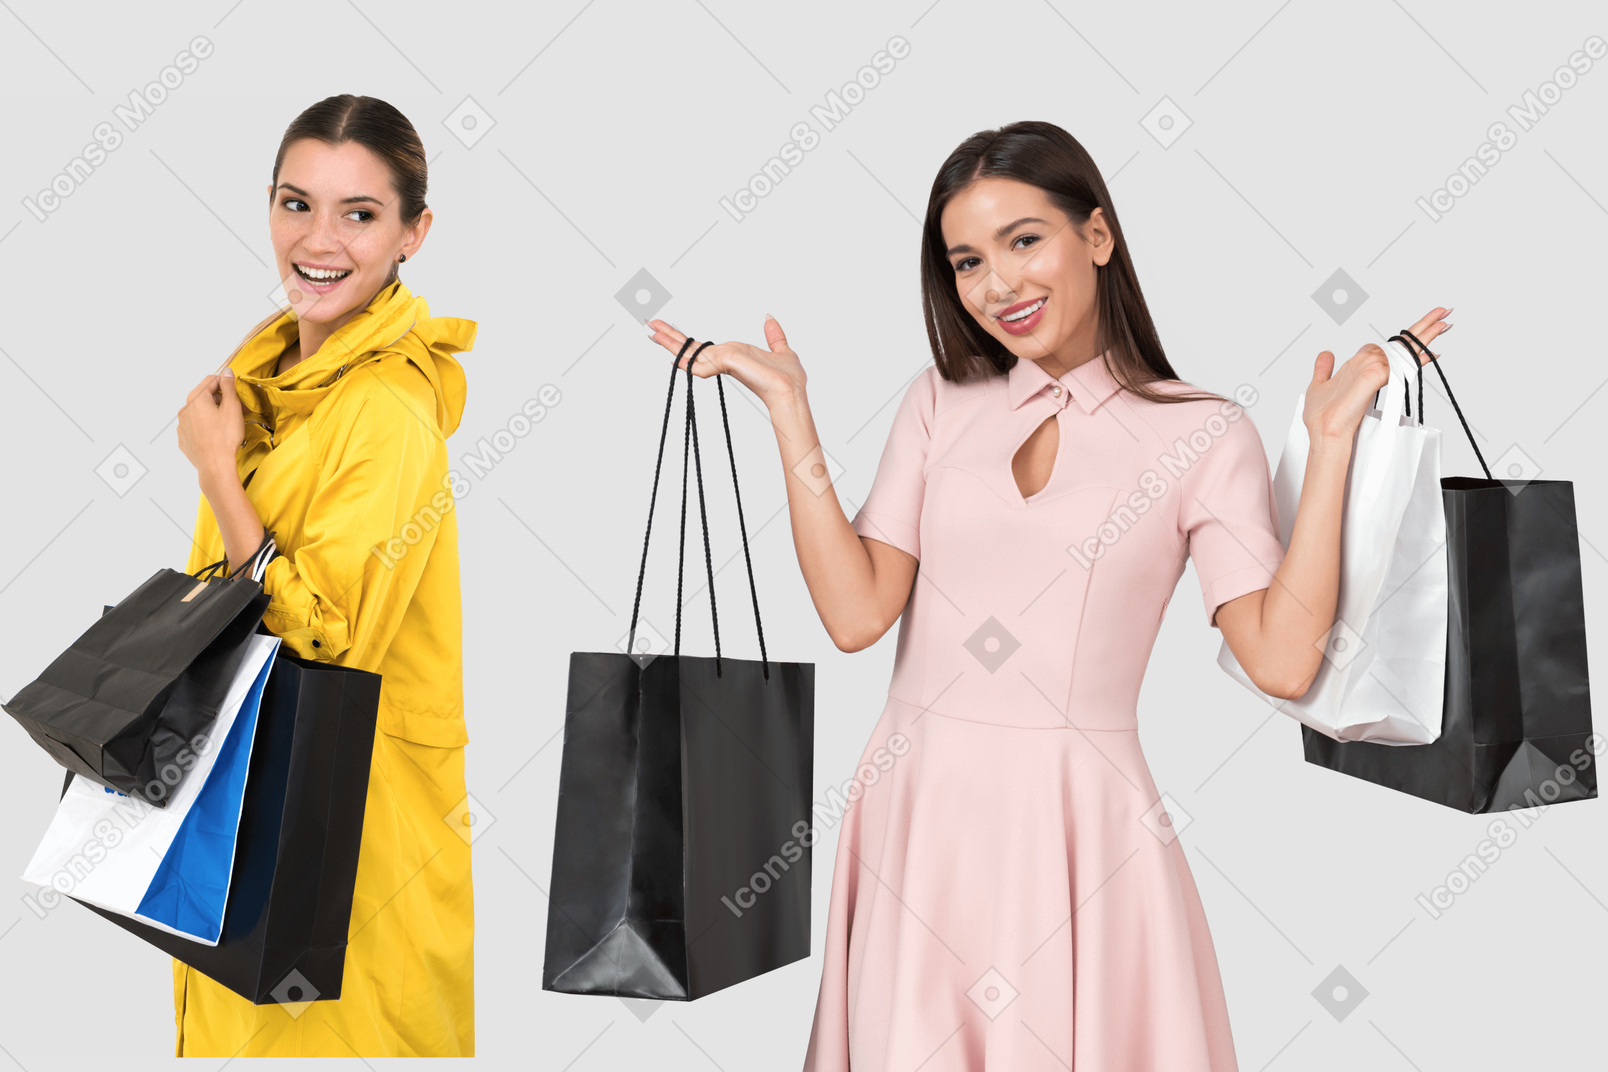 Young women holding shopping bags